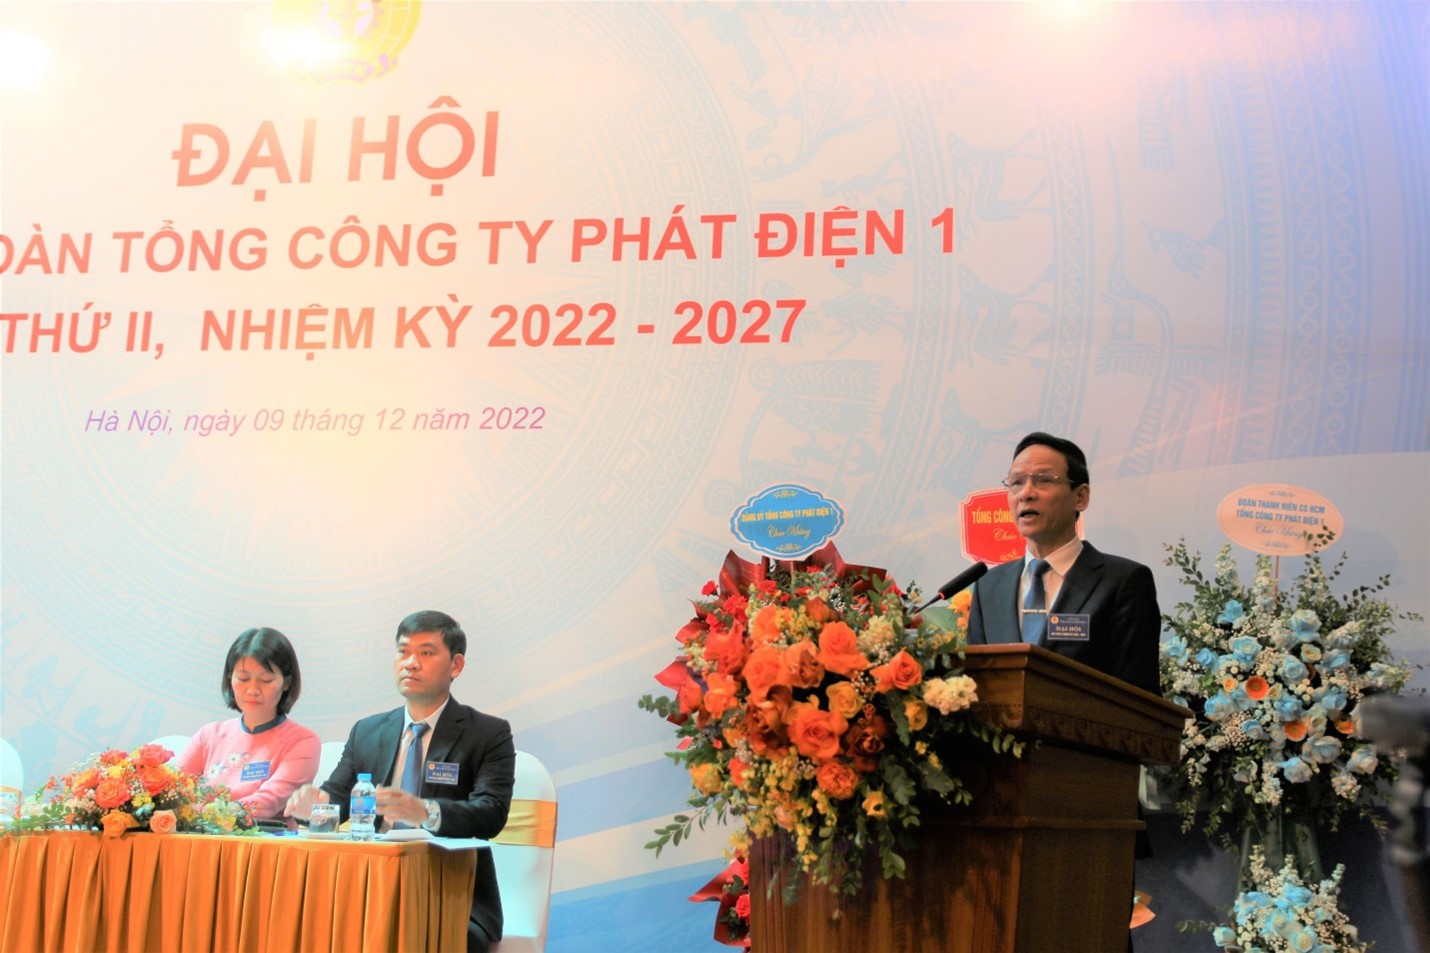 Công đoàn Tổng công ty phát điện 1 tổ chức thành công đại hội lần thứ II, nhiệm kỳ 2022 - 2027 1